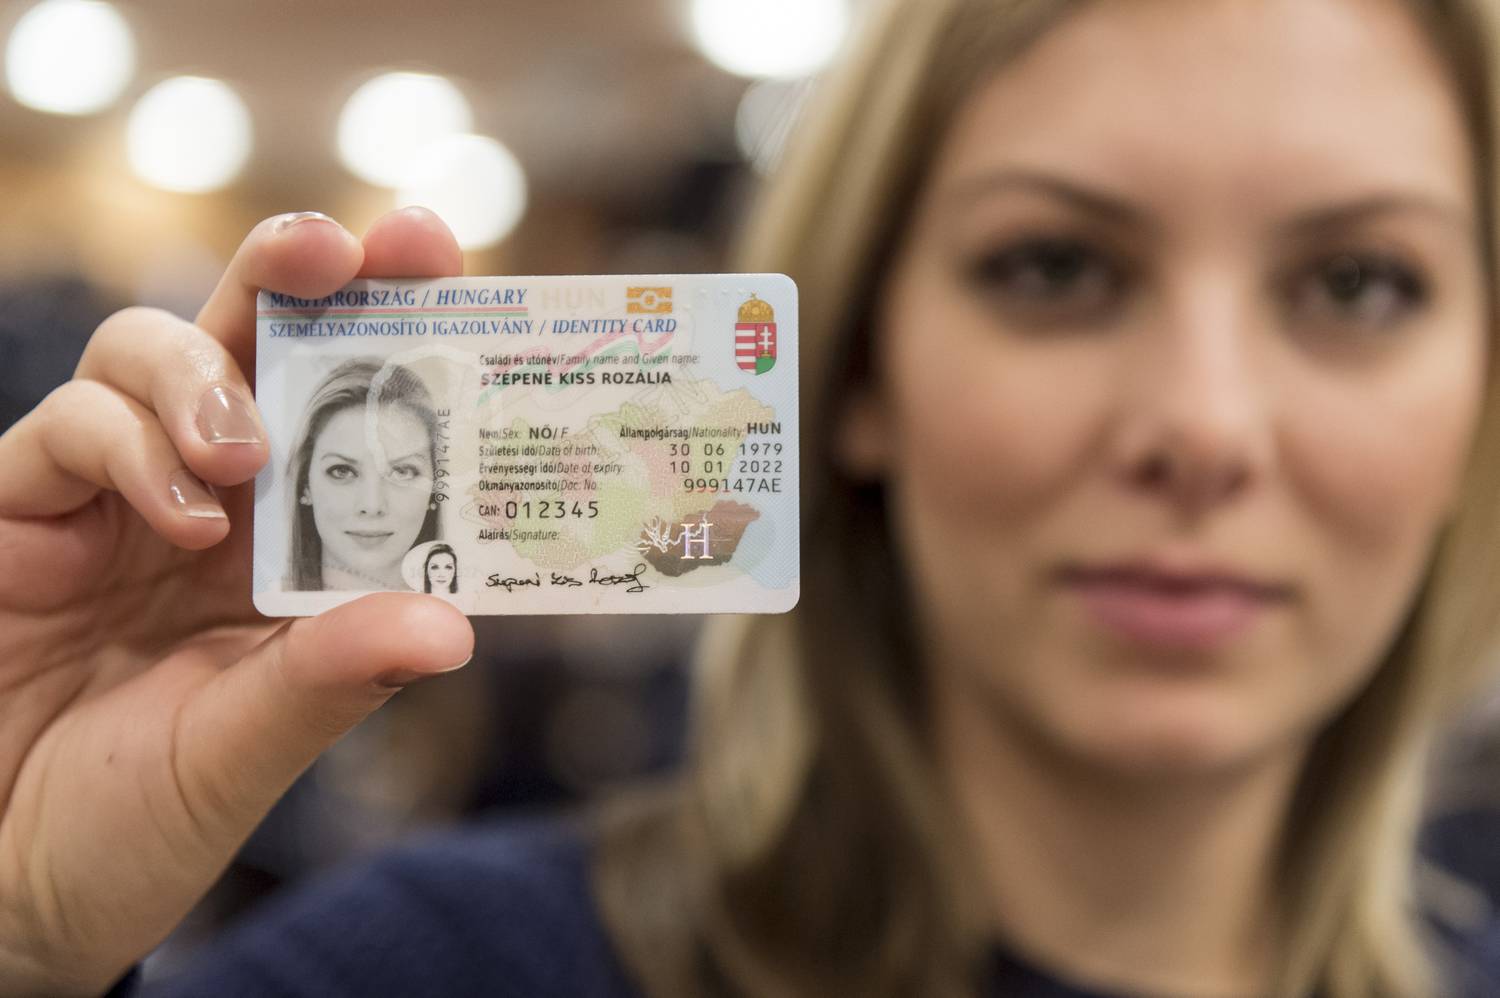 Получение гражданства австрии для россиян в 2021 году — изменения, новости | provizu.ru